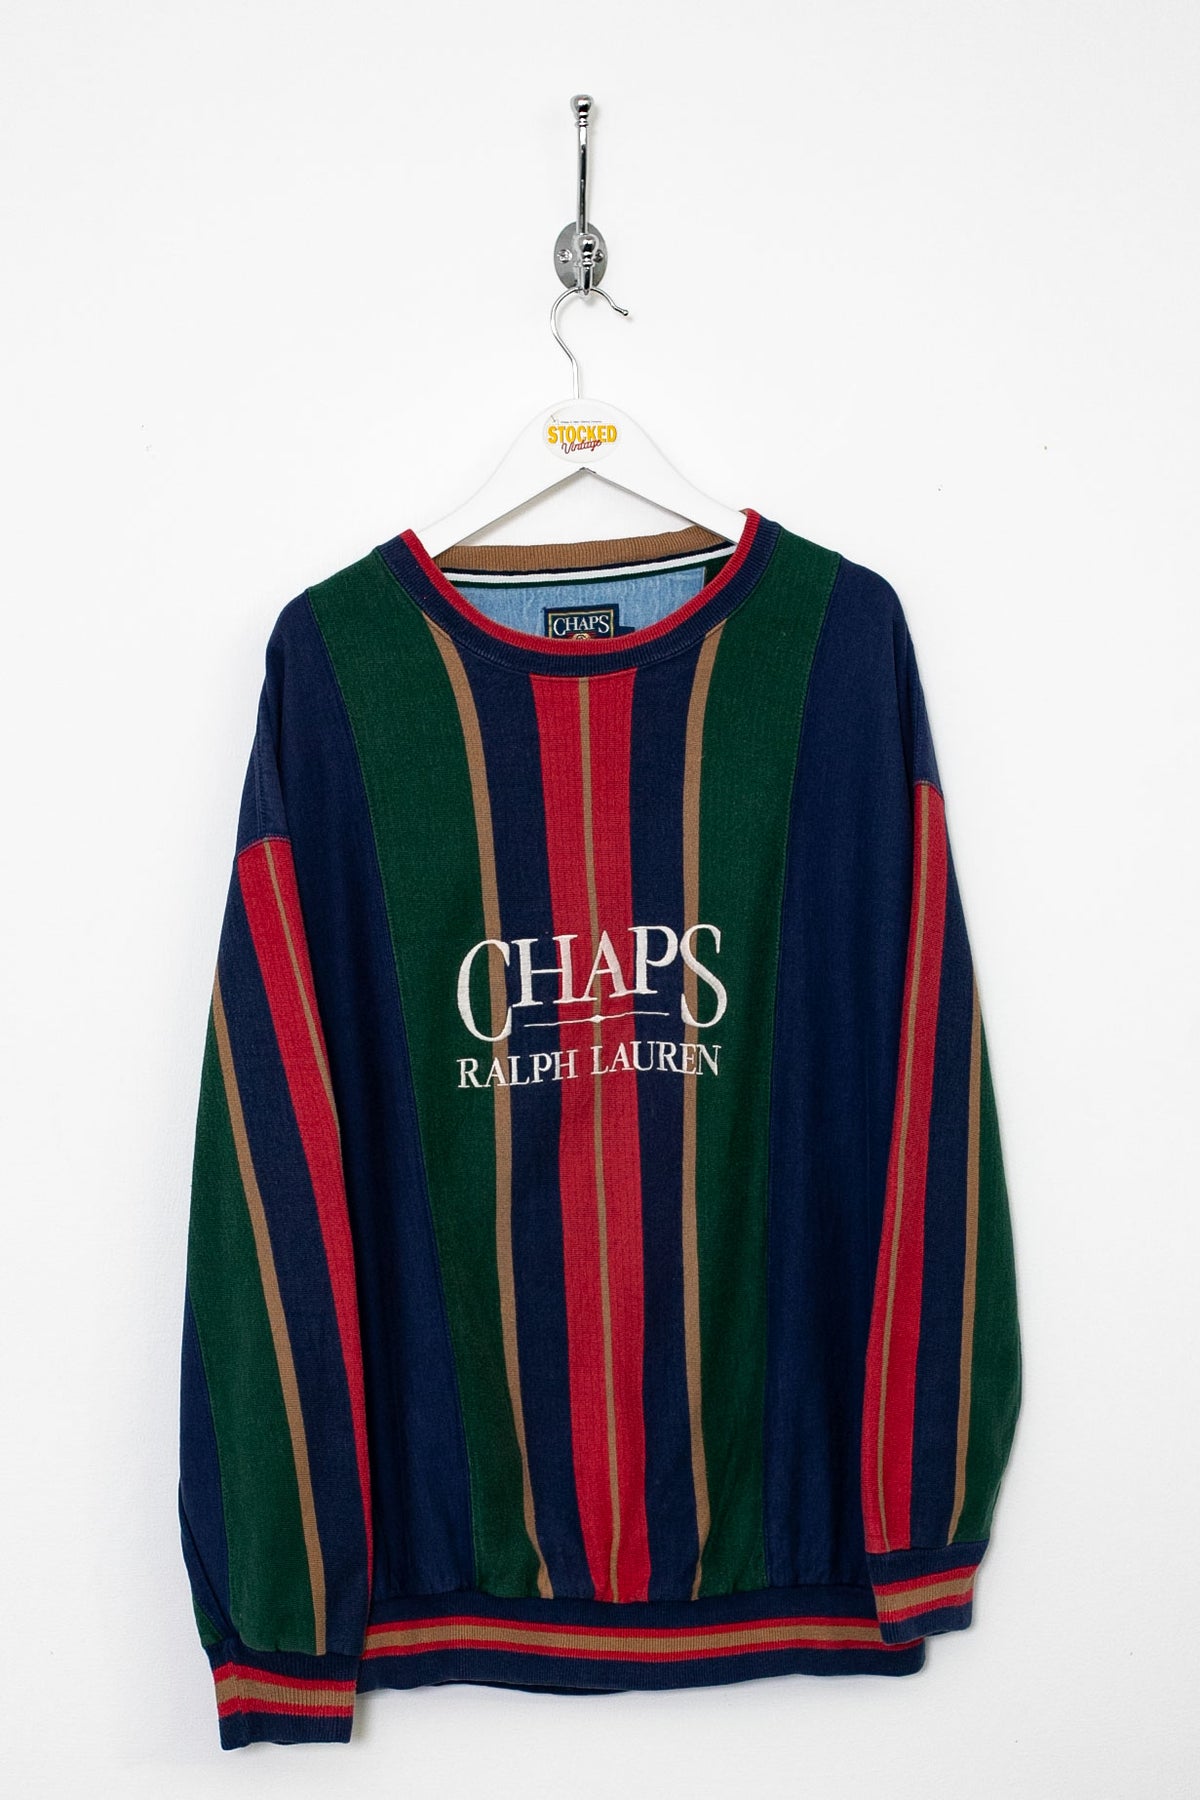 90s Ralph Lauren Chaps Sweatshirt (M)